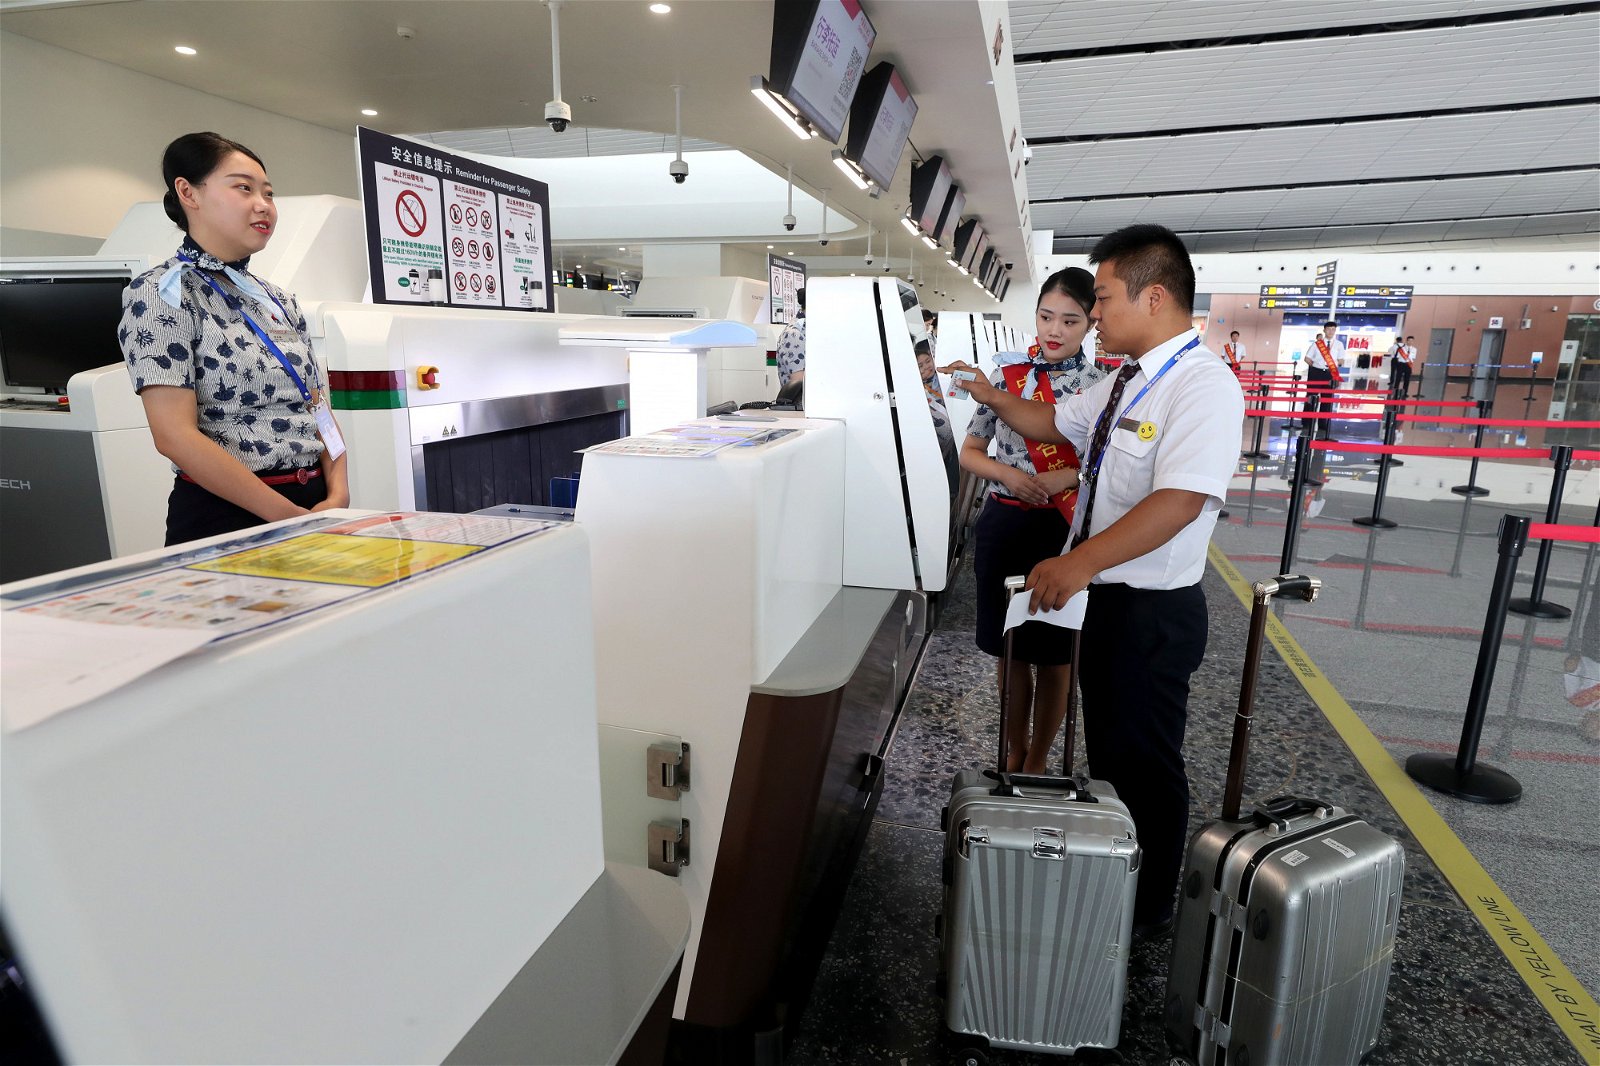 每个抵达大兴国际机场的旅客均可就近，找到值机柜台办理登机手续。不仅如此，该机场内还置放了多达400台的自助值机设备，让旅客能体验到最省时最便利的服务。